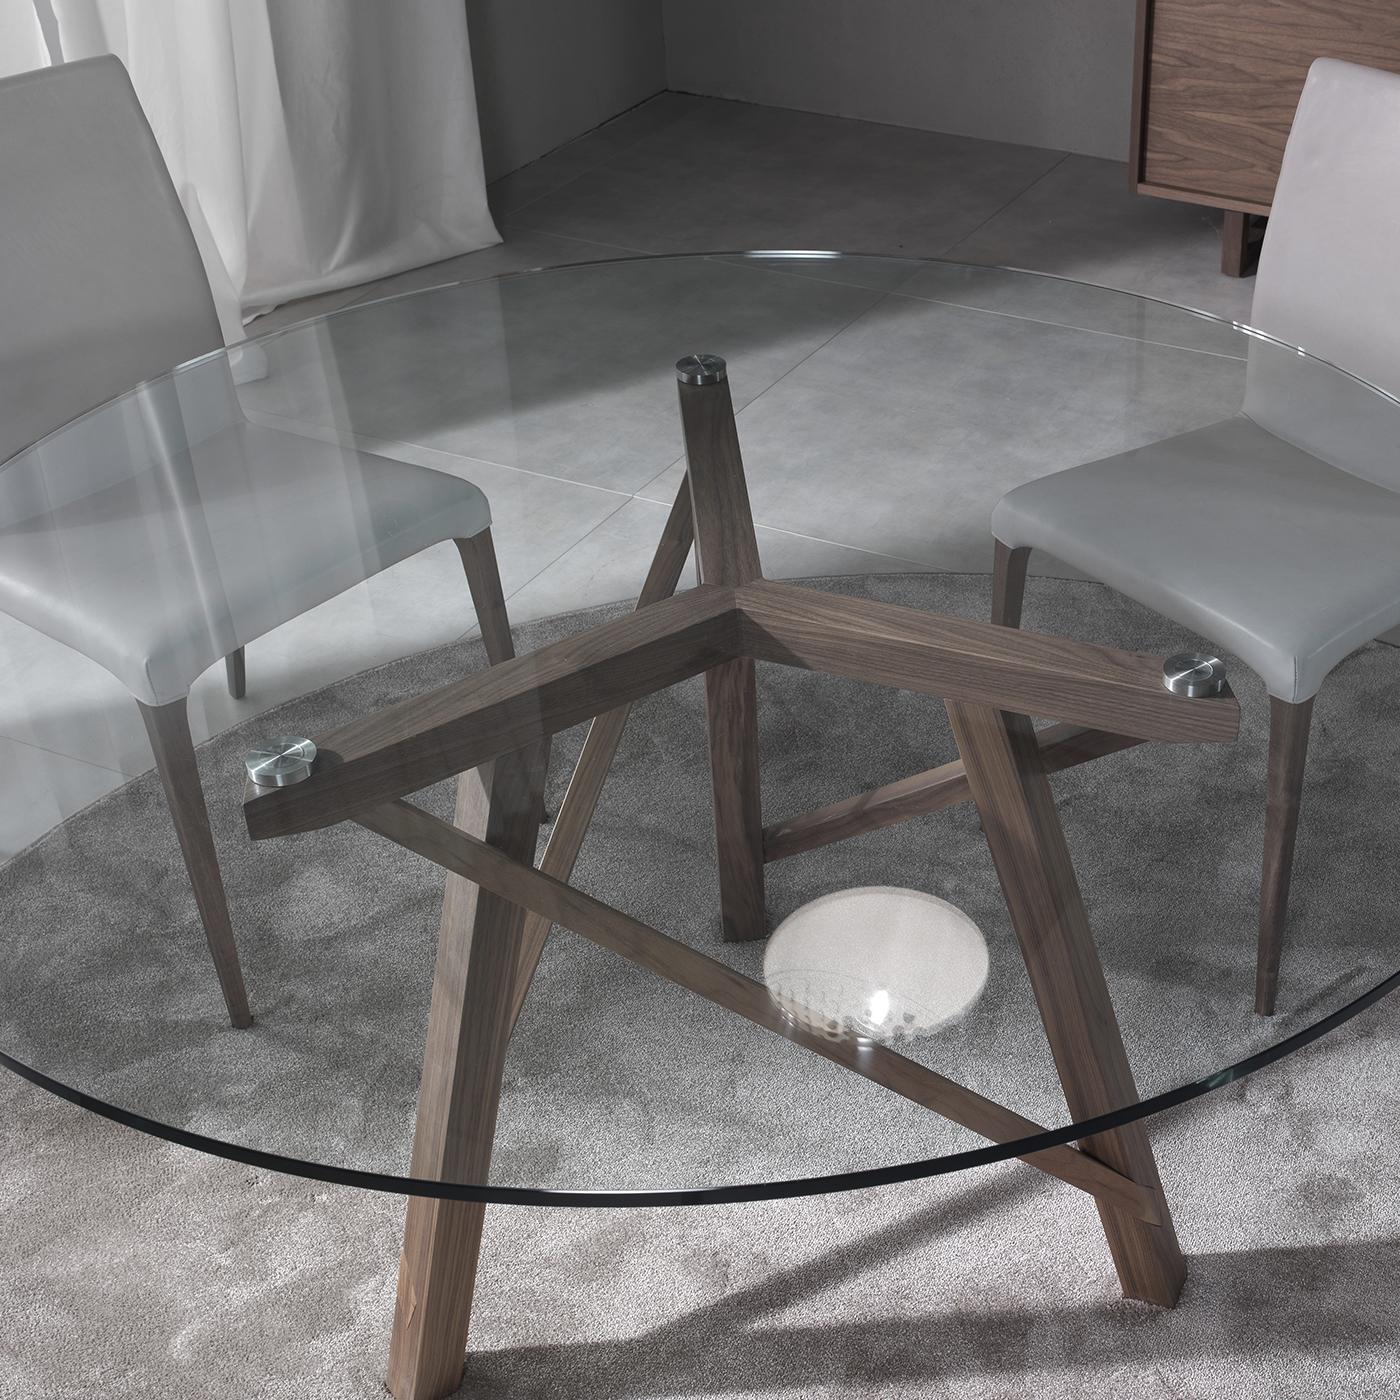 Conçue par Giuliano et Gabriele Cappelletti, cette table de salle à manger ronde fait partie de la collection Zeus. Le plateau en verre transparent permet une vue complète de la structure dynamique étonnante en noyer Canaletto qui comprend trois